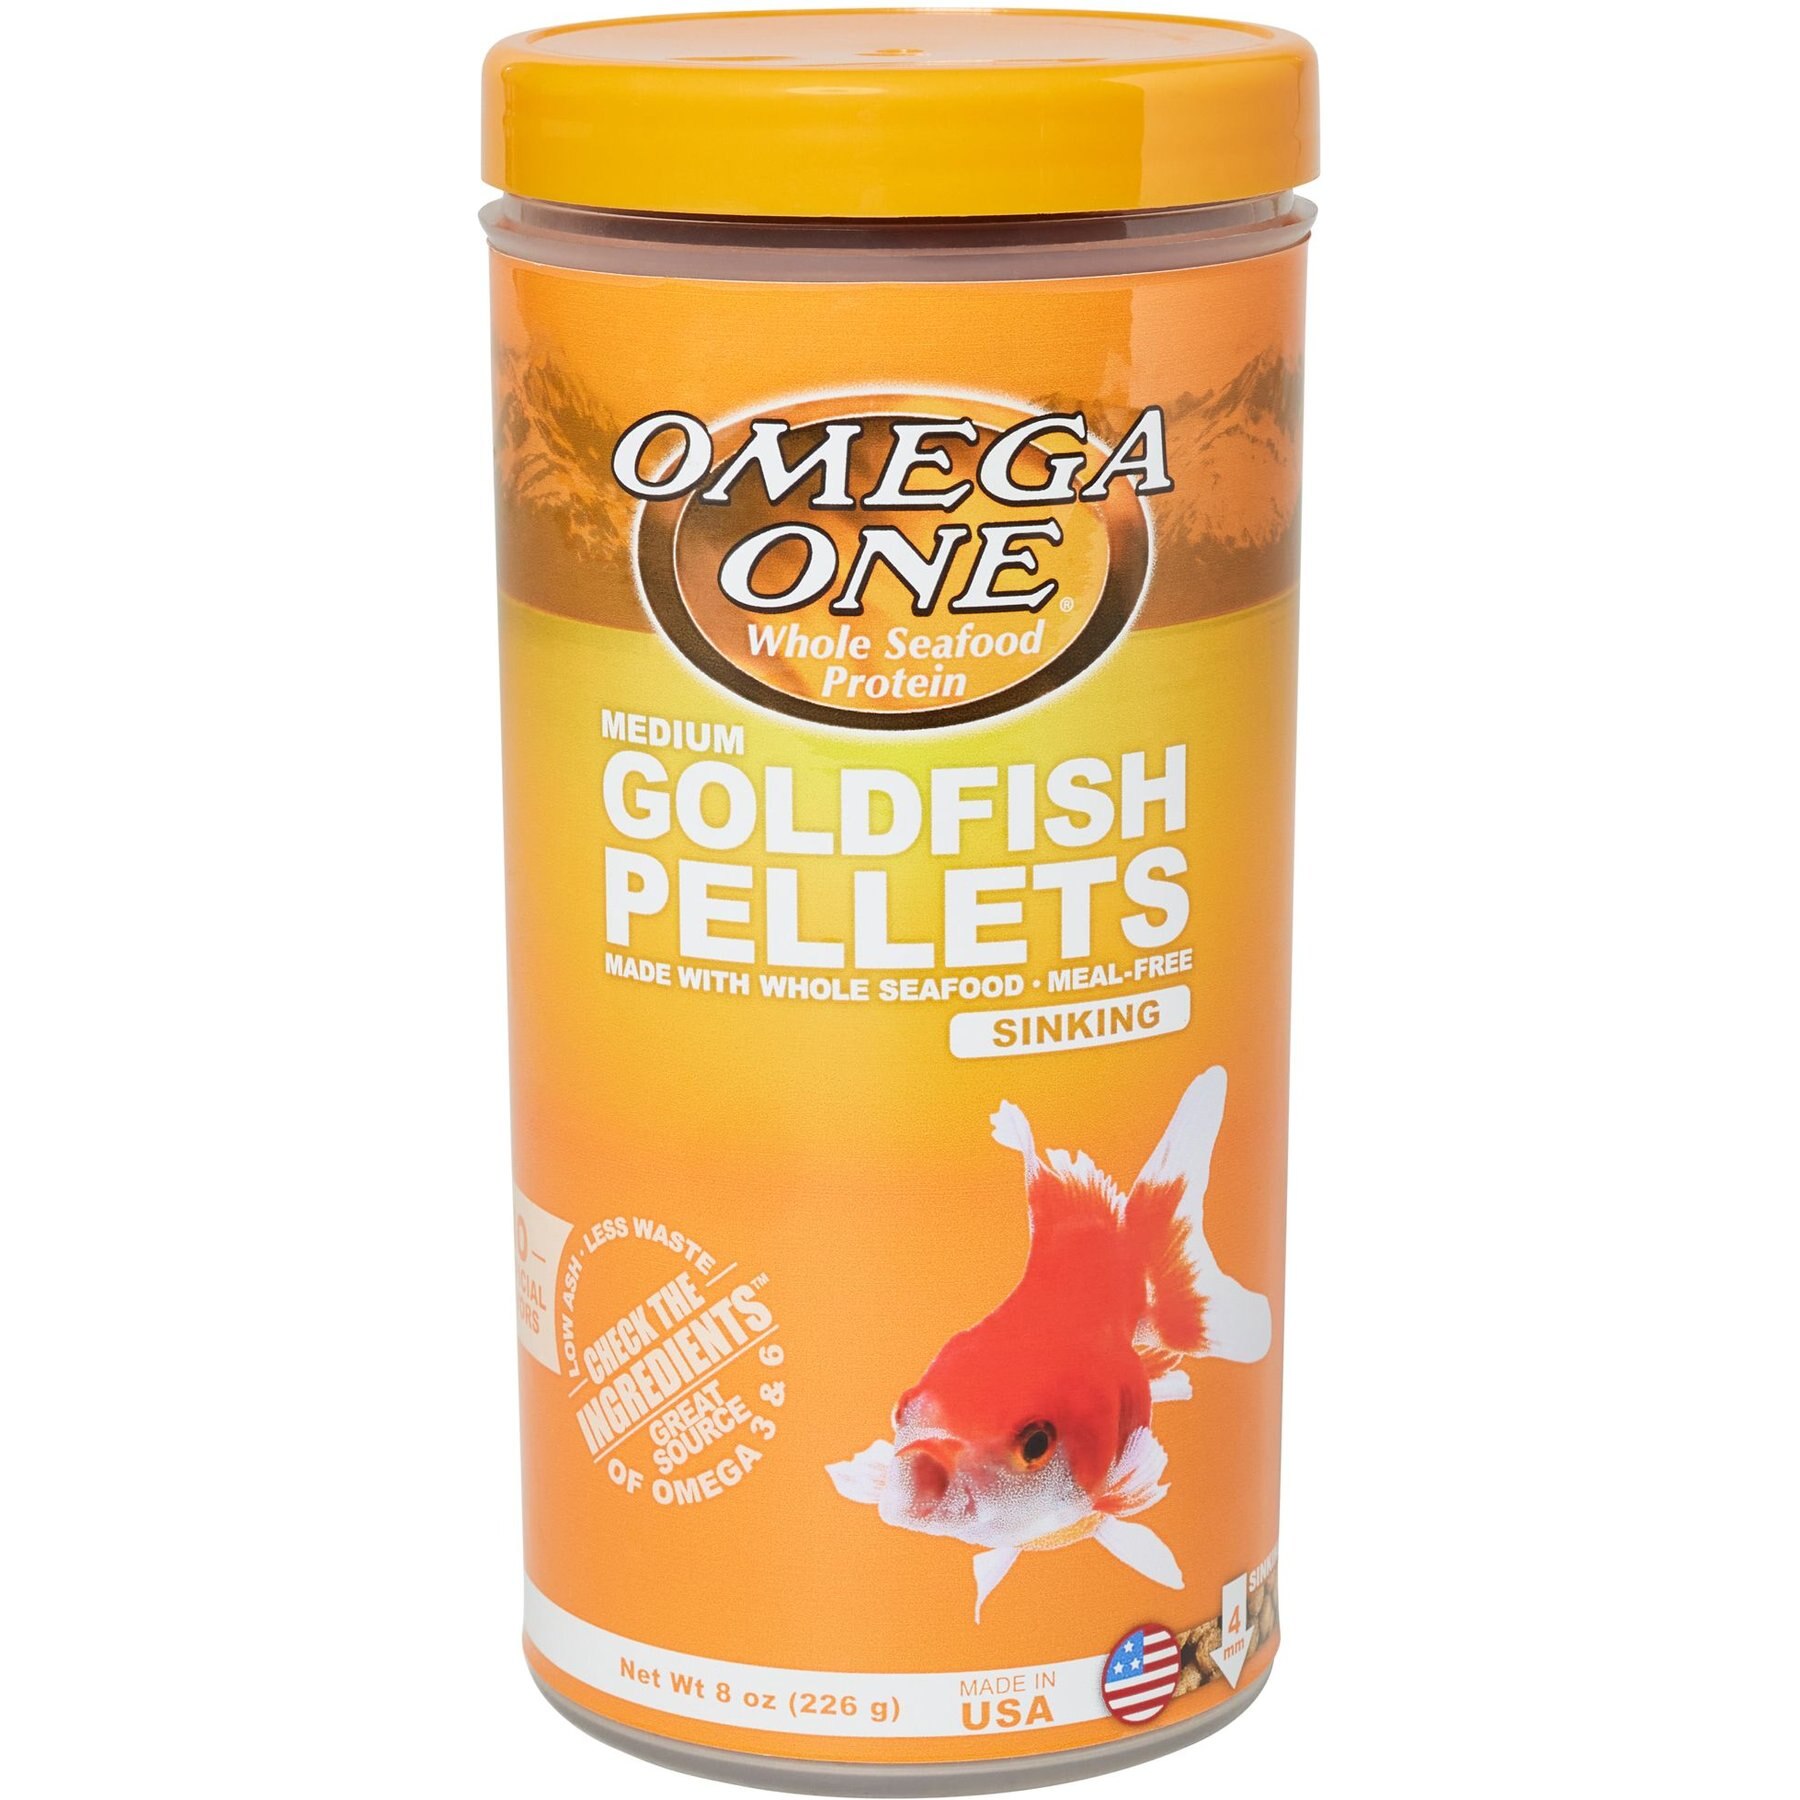 Omega One Medium Goldfish Pellets, Sinking, 8 oz